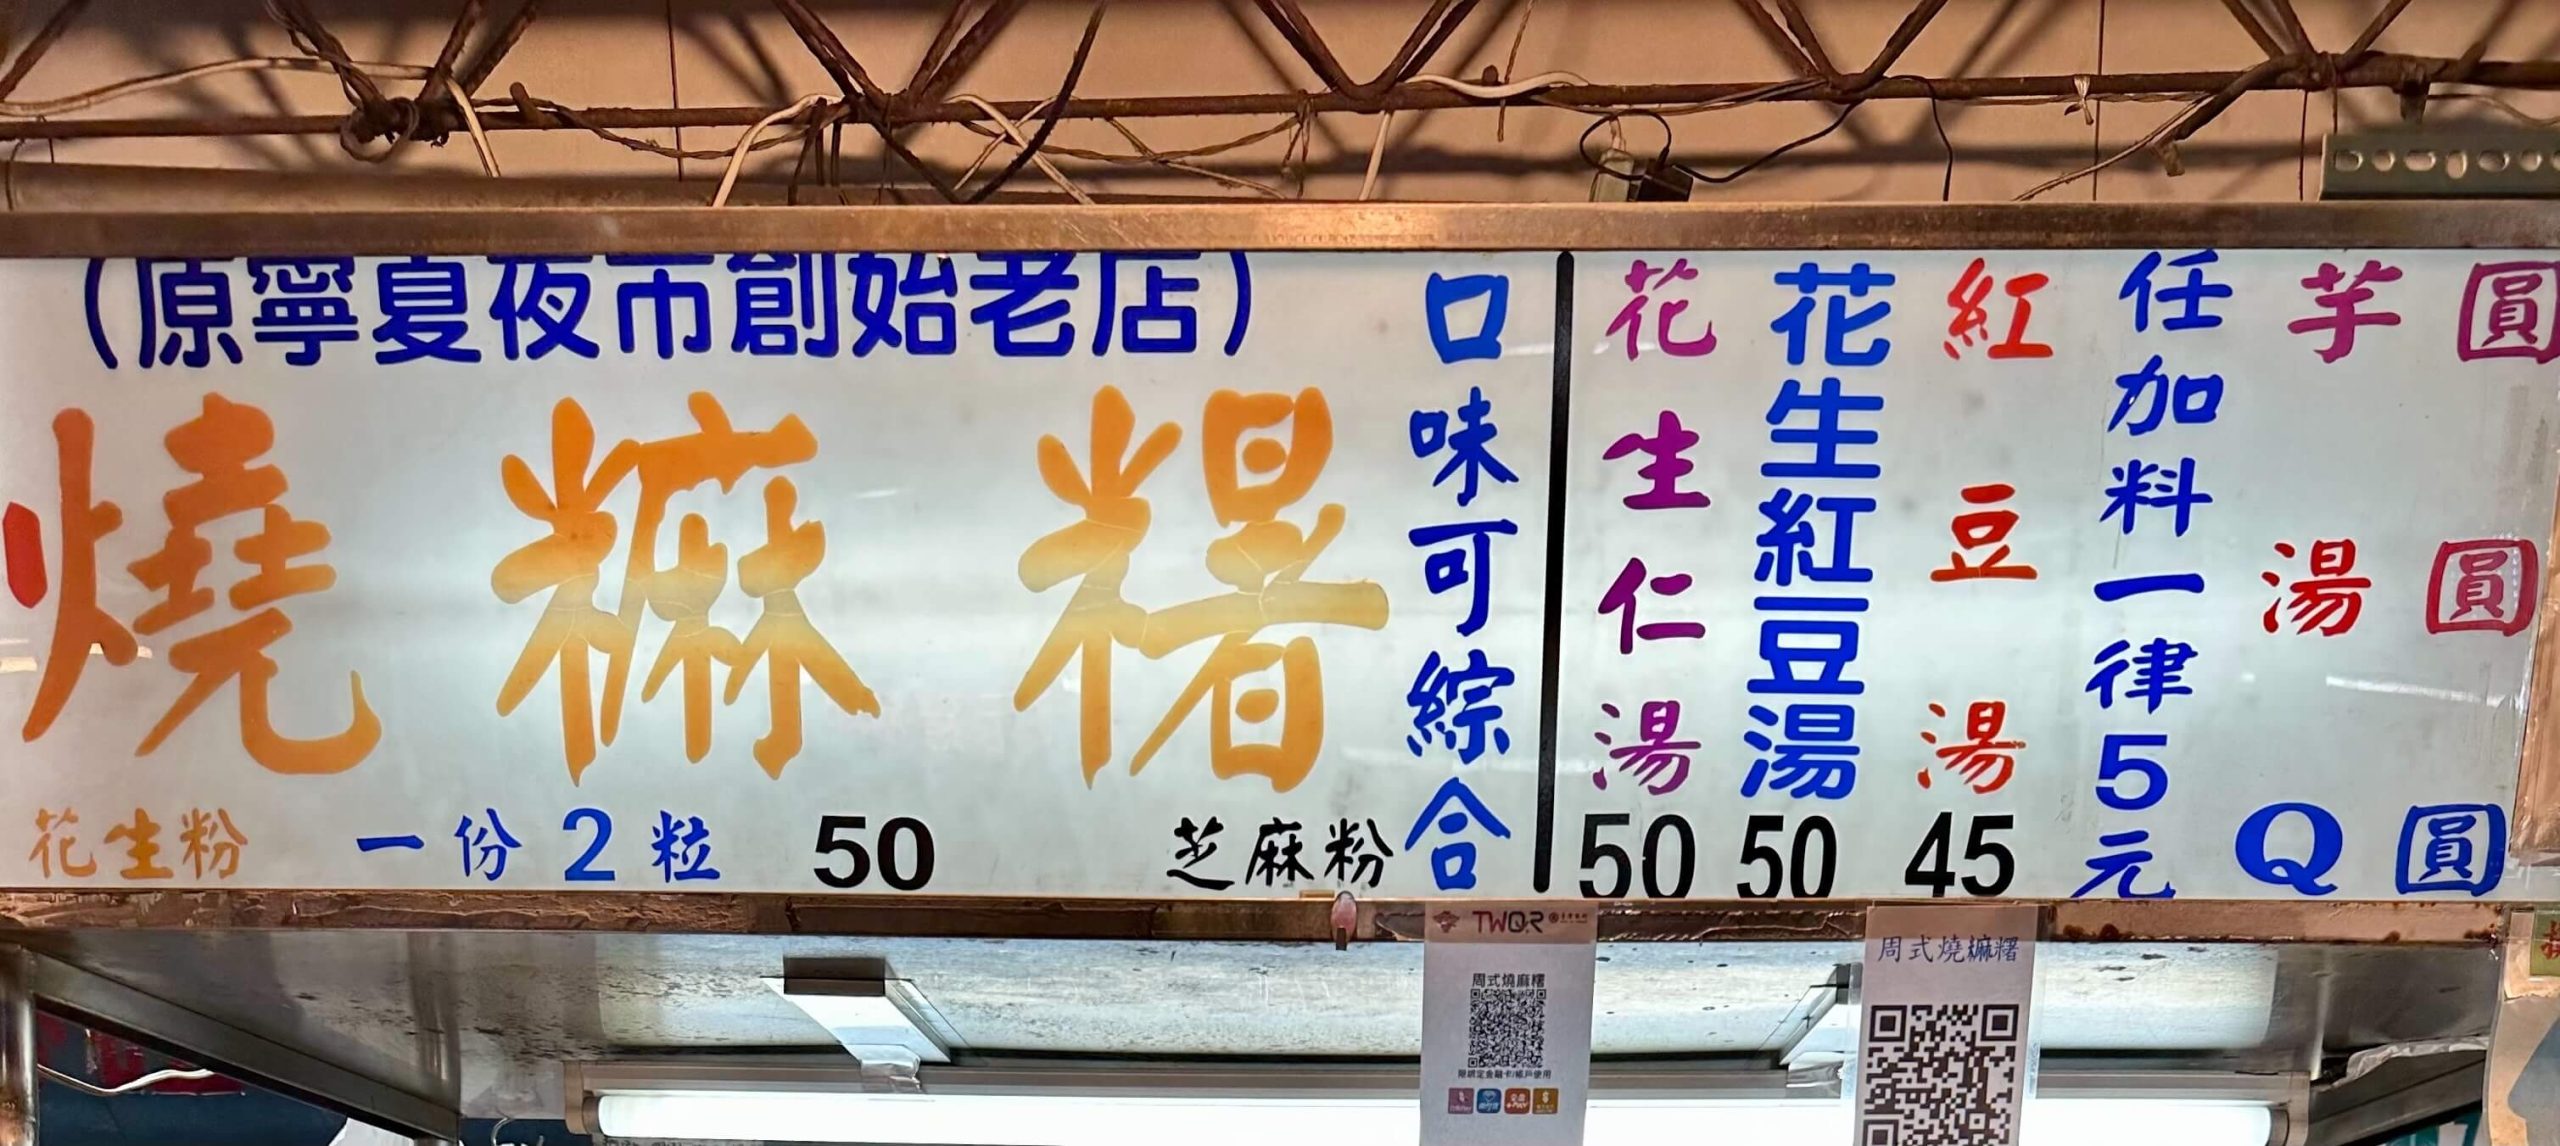 周式燒麻糬菜單MENU